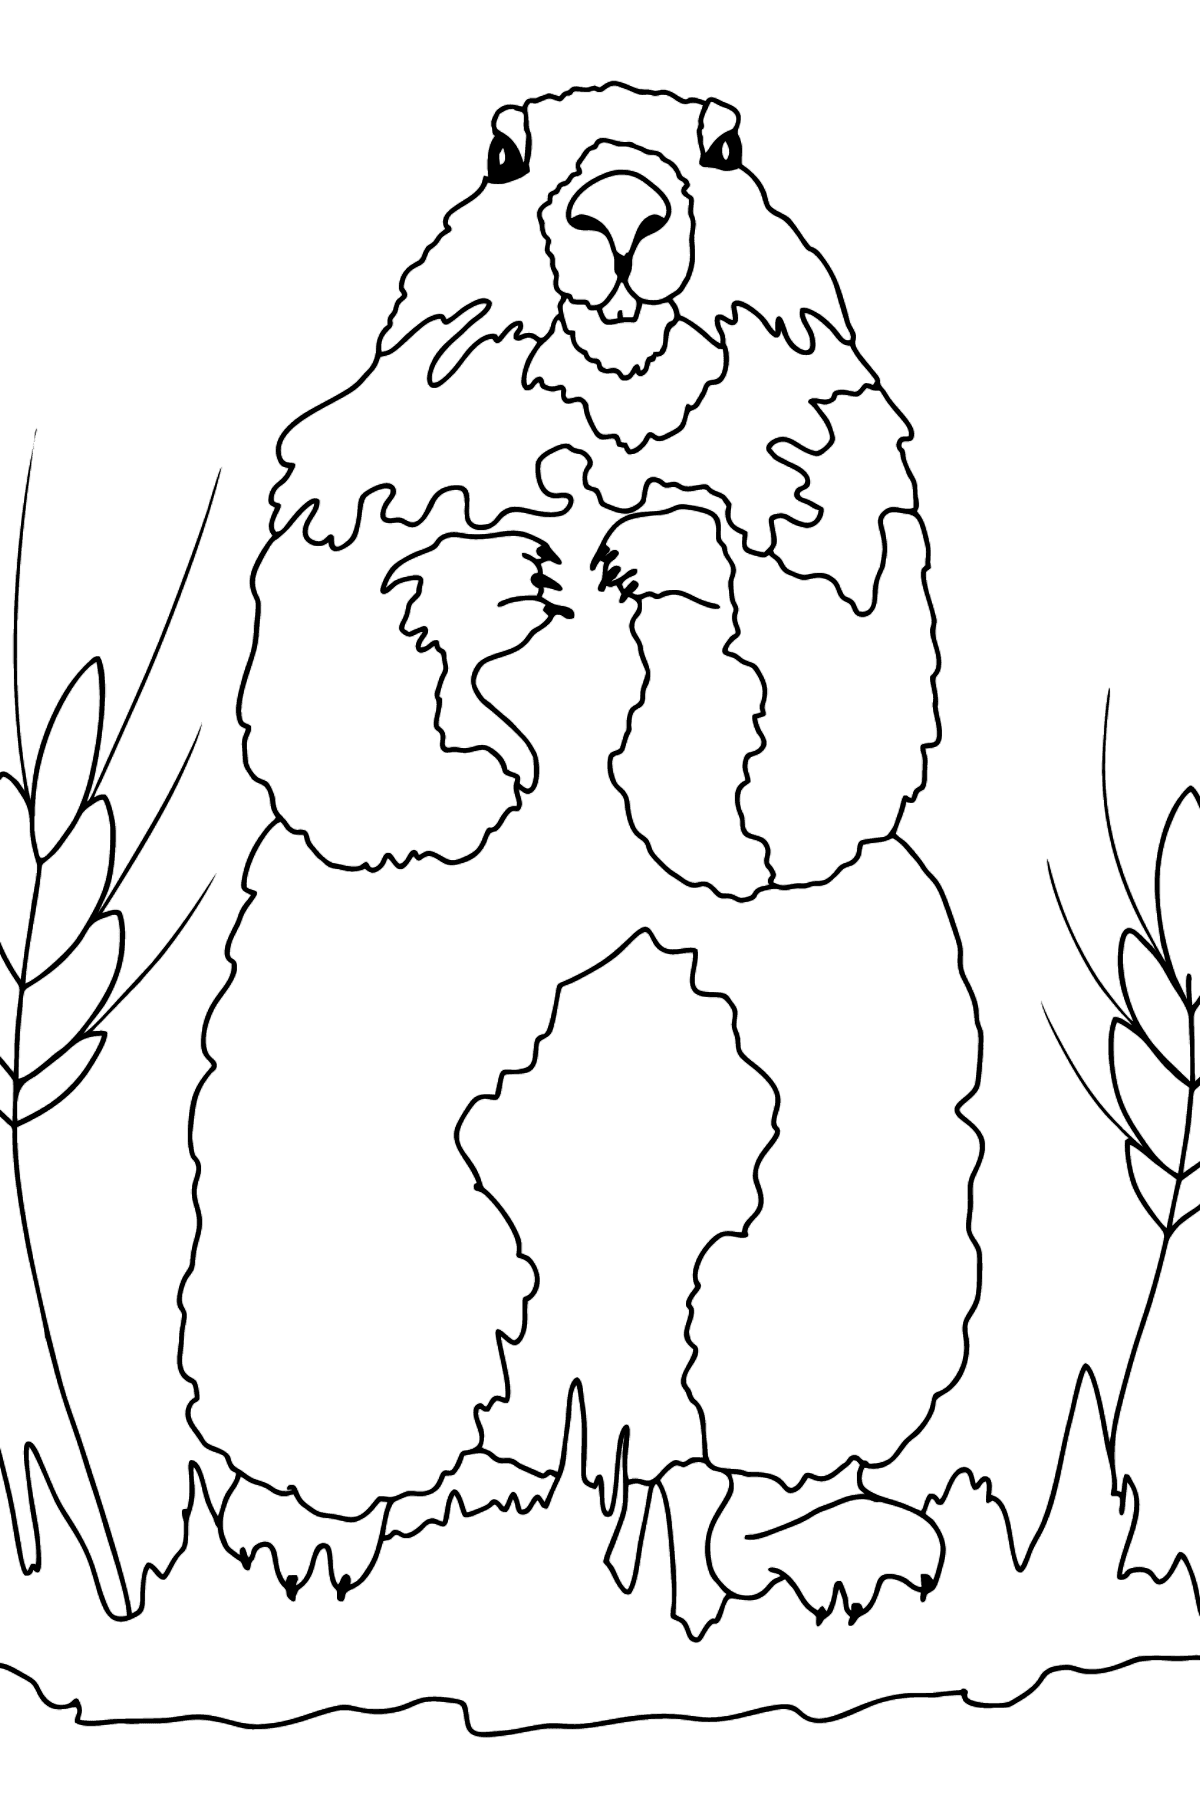 Coloriage - Une marmotte regarde hors de son terrier - Coloriages pour les Enfants